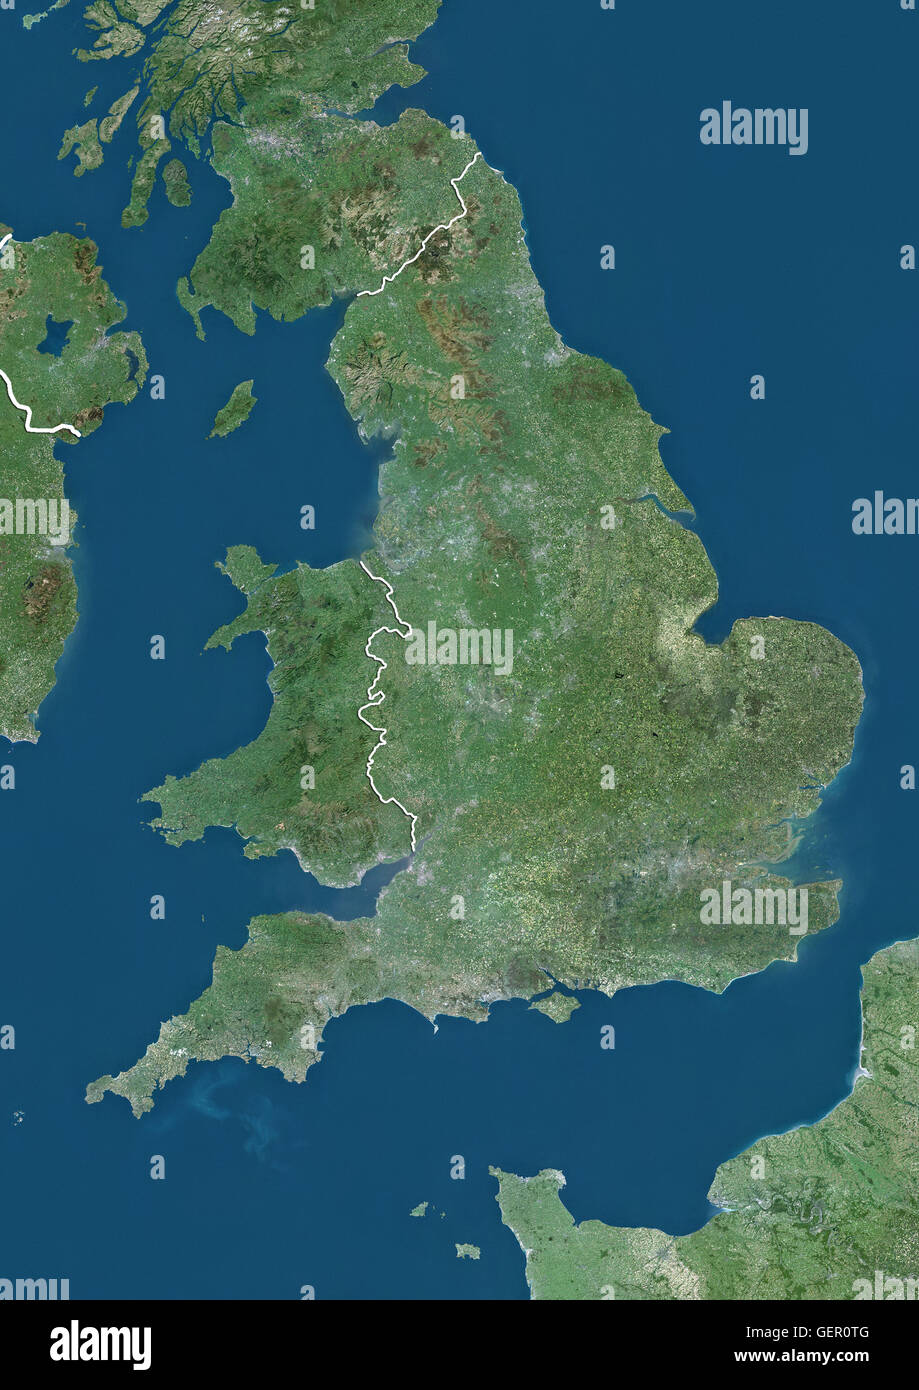 Vista satellitare di Inghilterra e Galles, UK (con i confini del paese). Questa immagine è stata elaborata sulla base dei dati acquisiti dai satelliti Landsat. Foto Stock